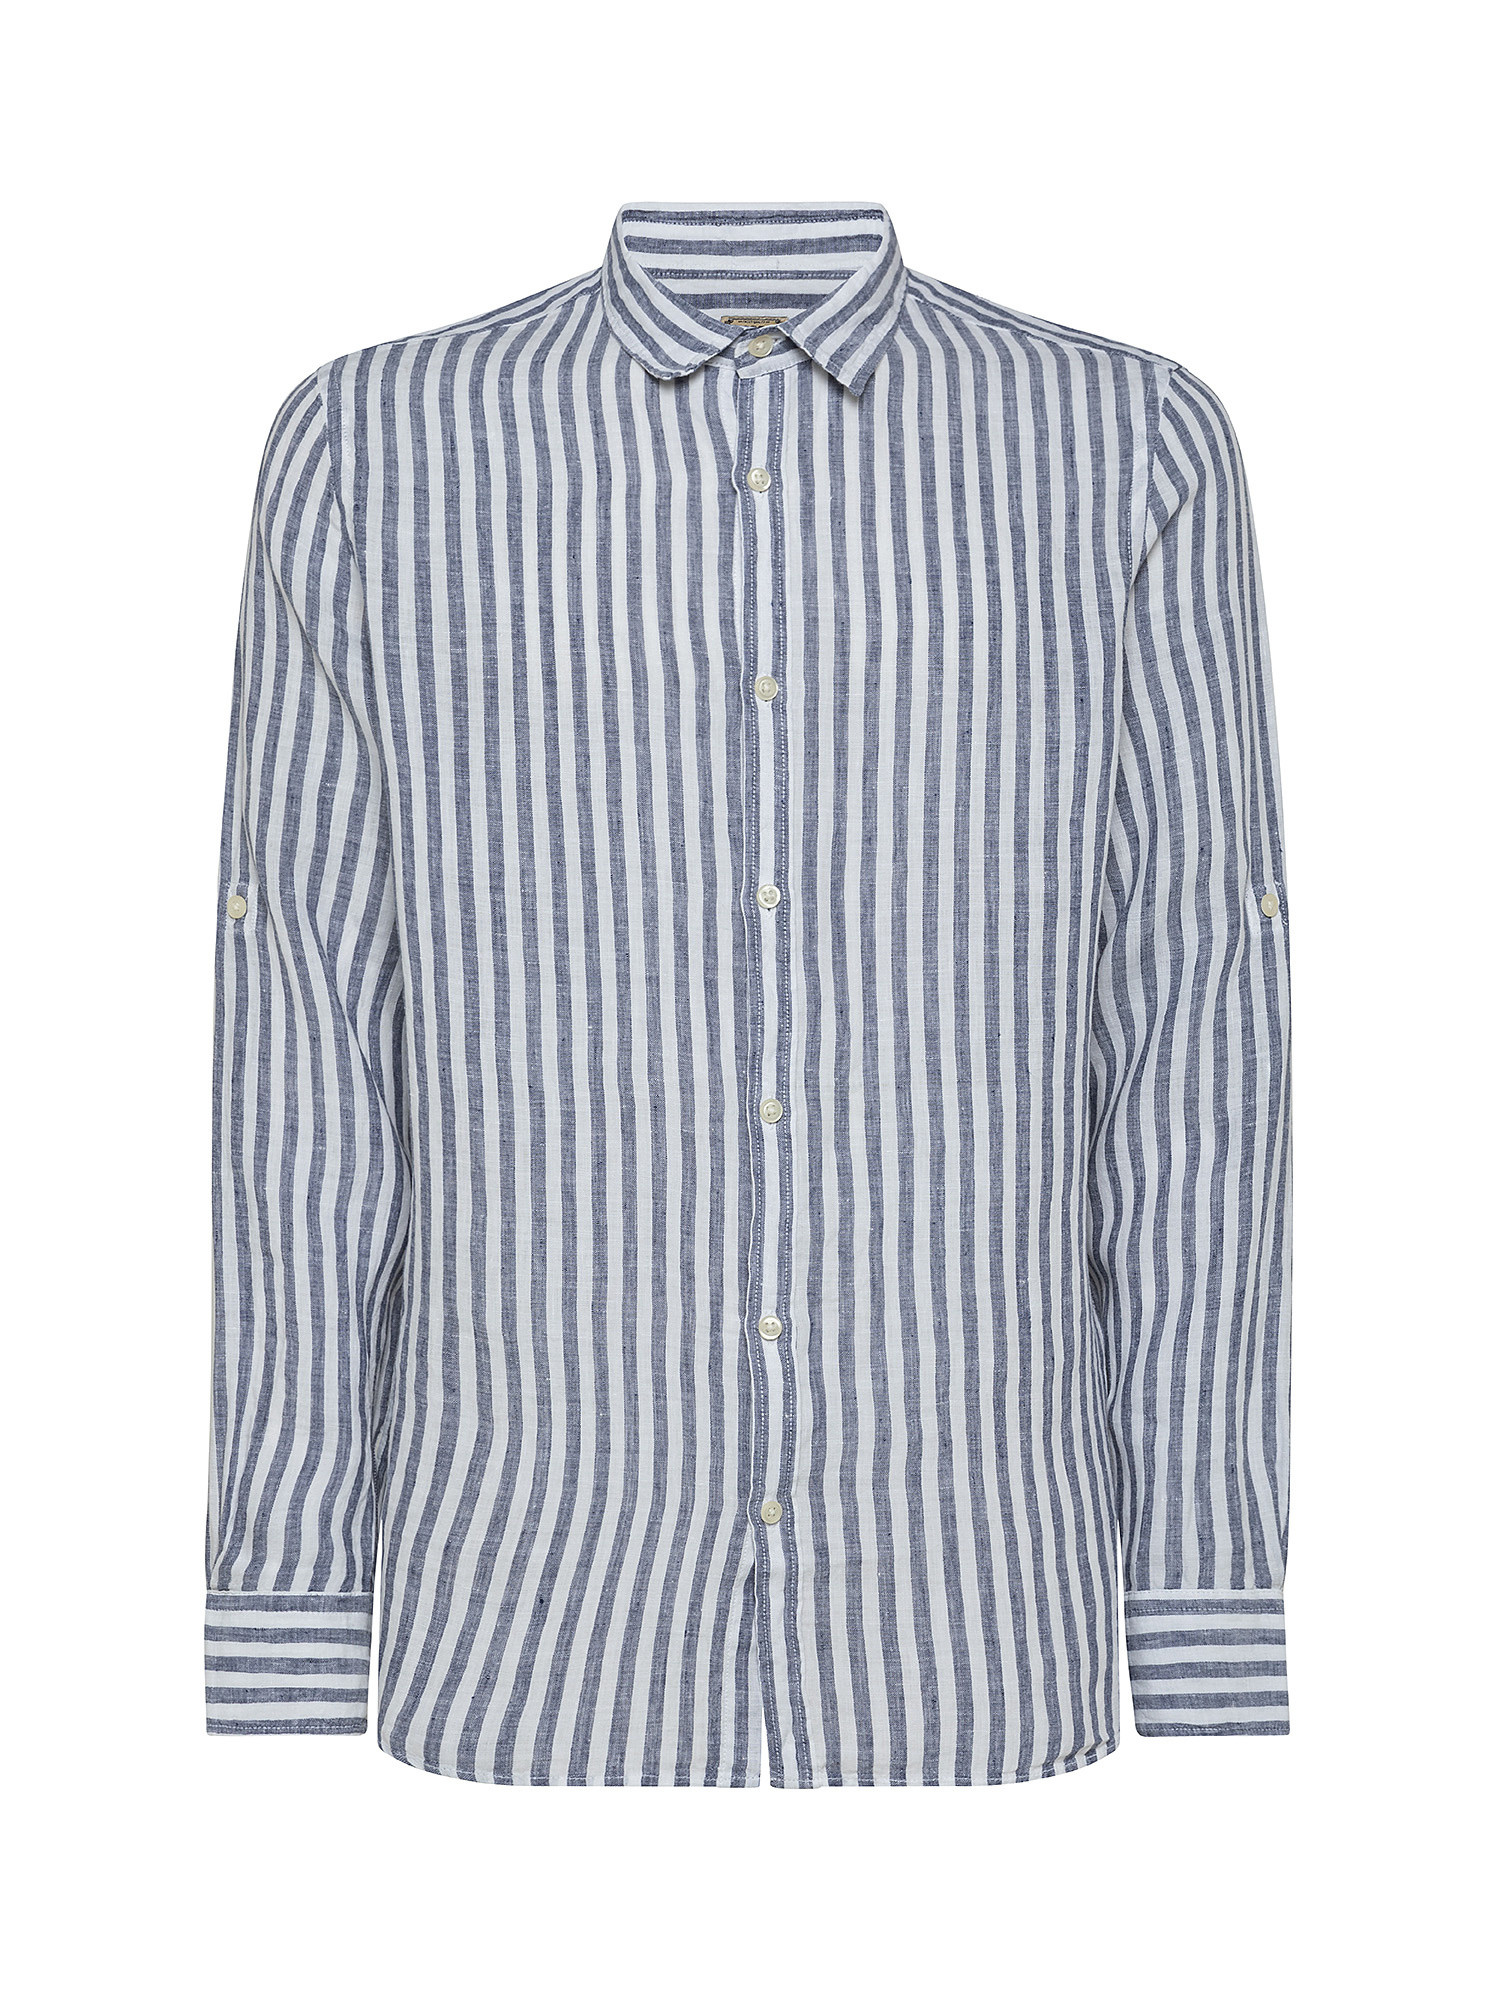 Camicia puro lino collo francese, Blu chiaro, large image number 0